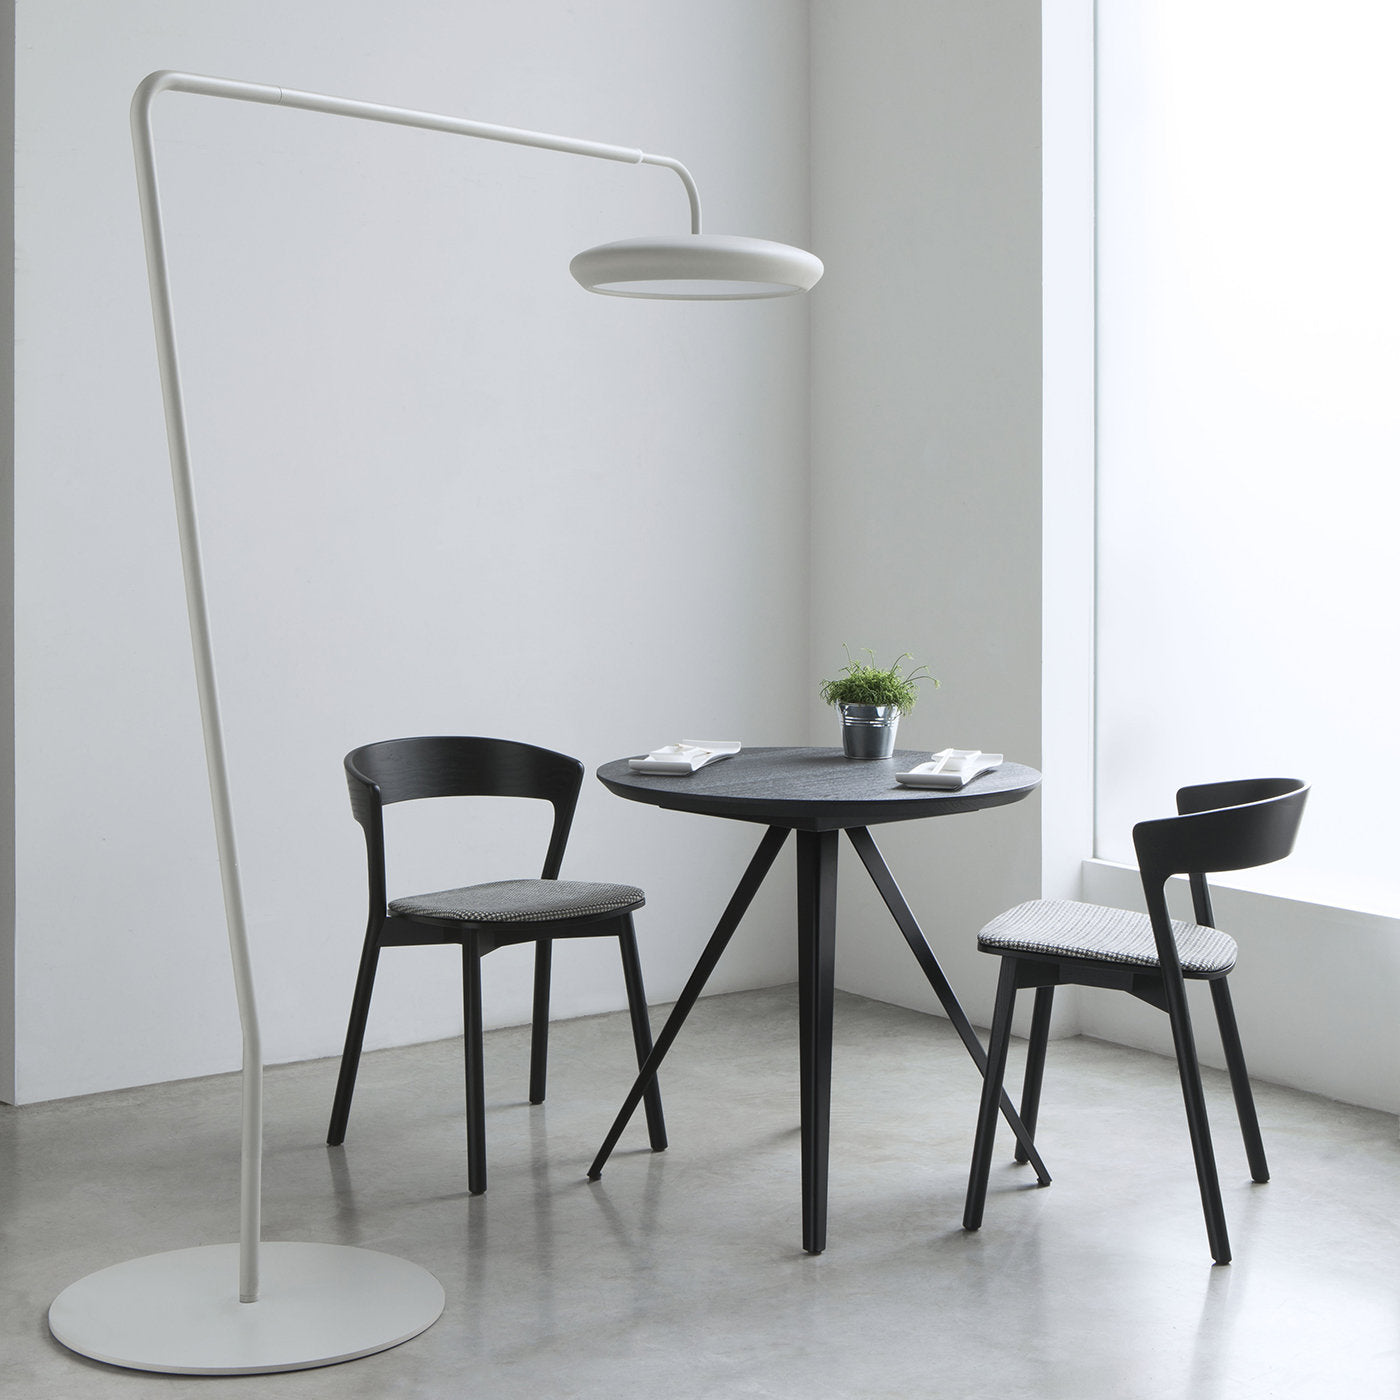 Edith Le Black Chair by Massimo Broglio - Alternative view 5